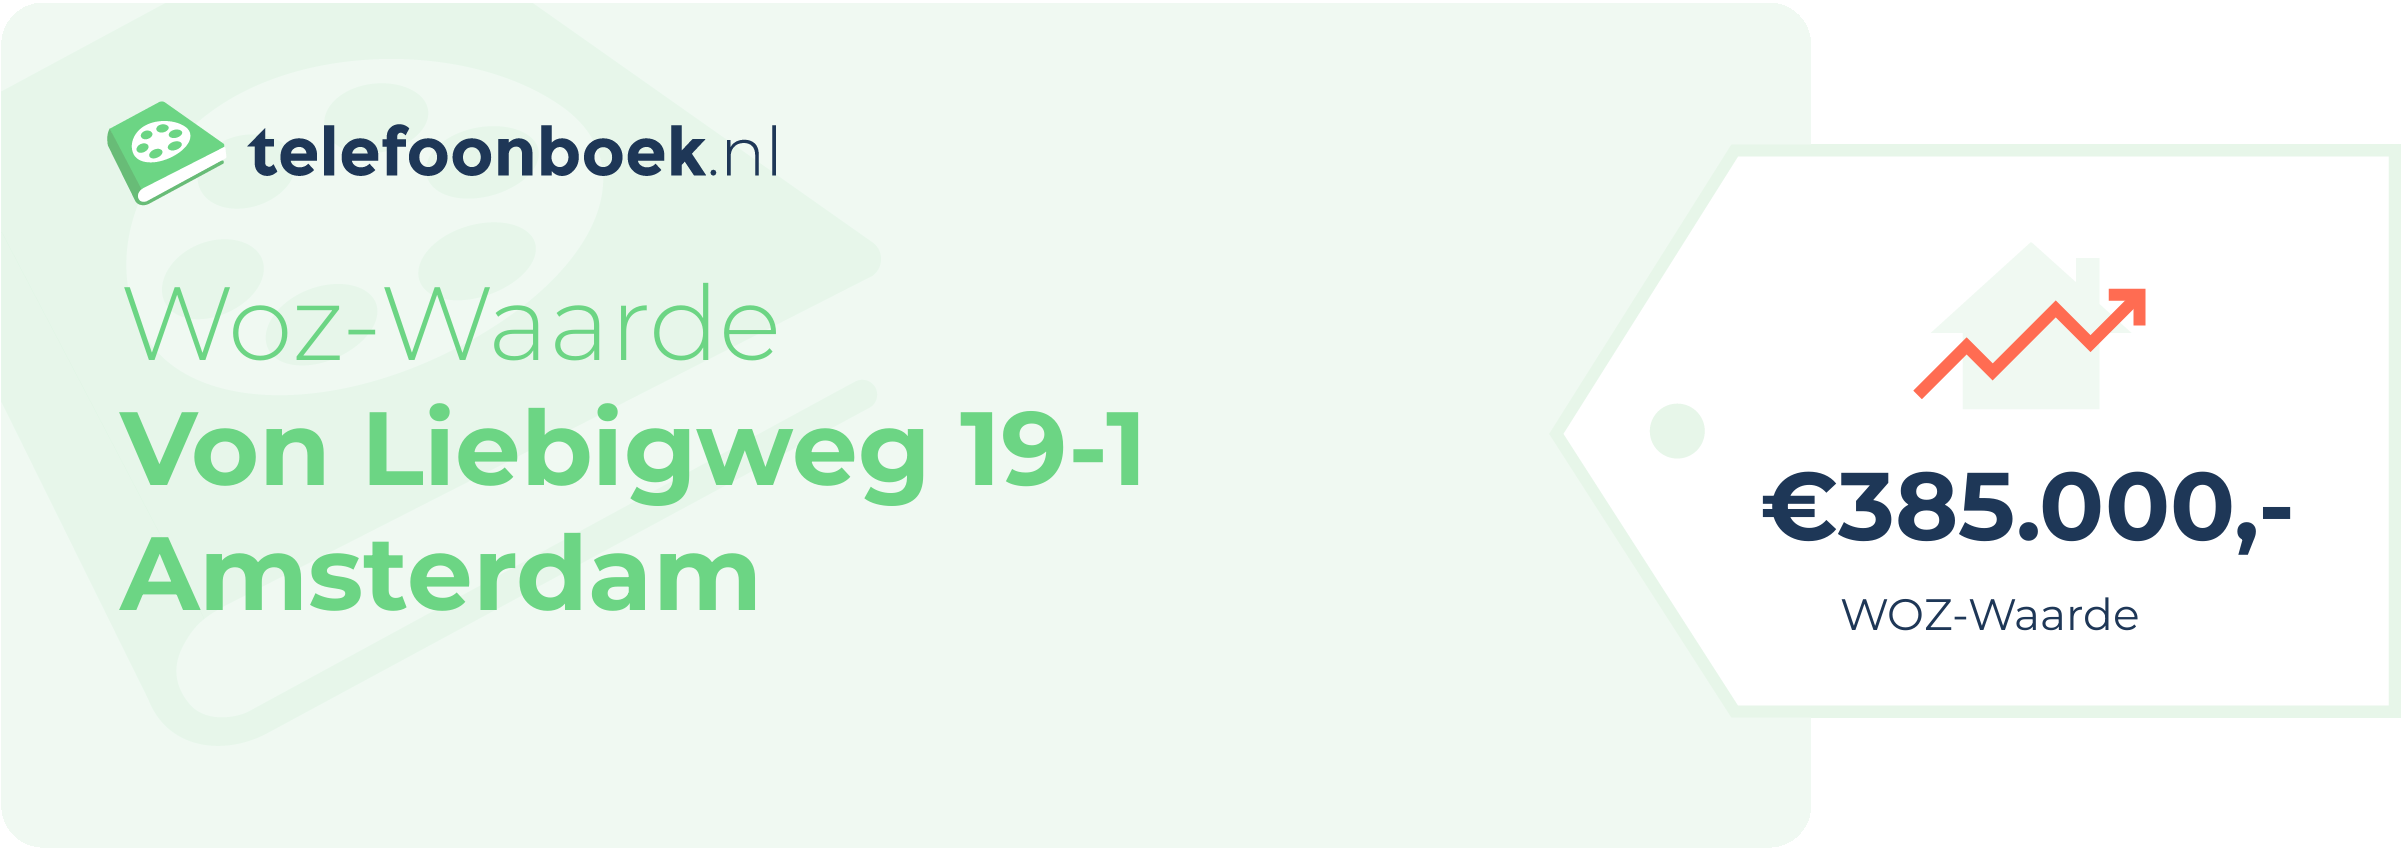 WOZ-waarde Von Liebigweg 19-1 Amsterdam